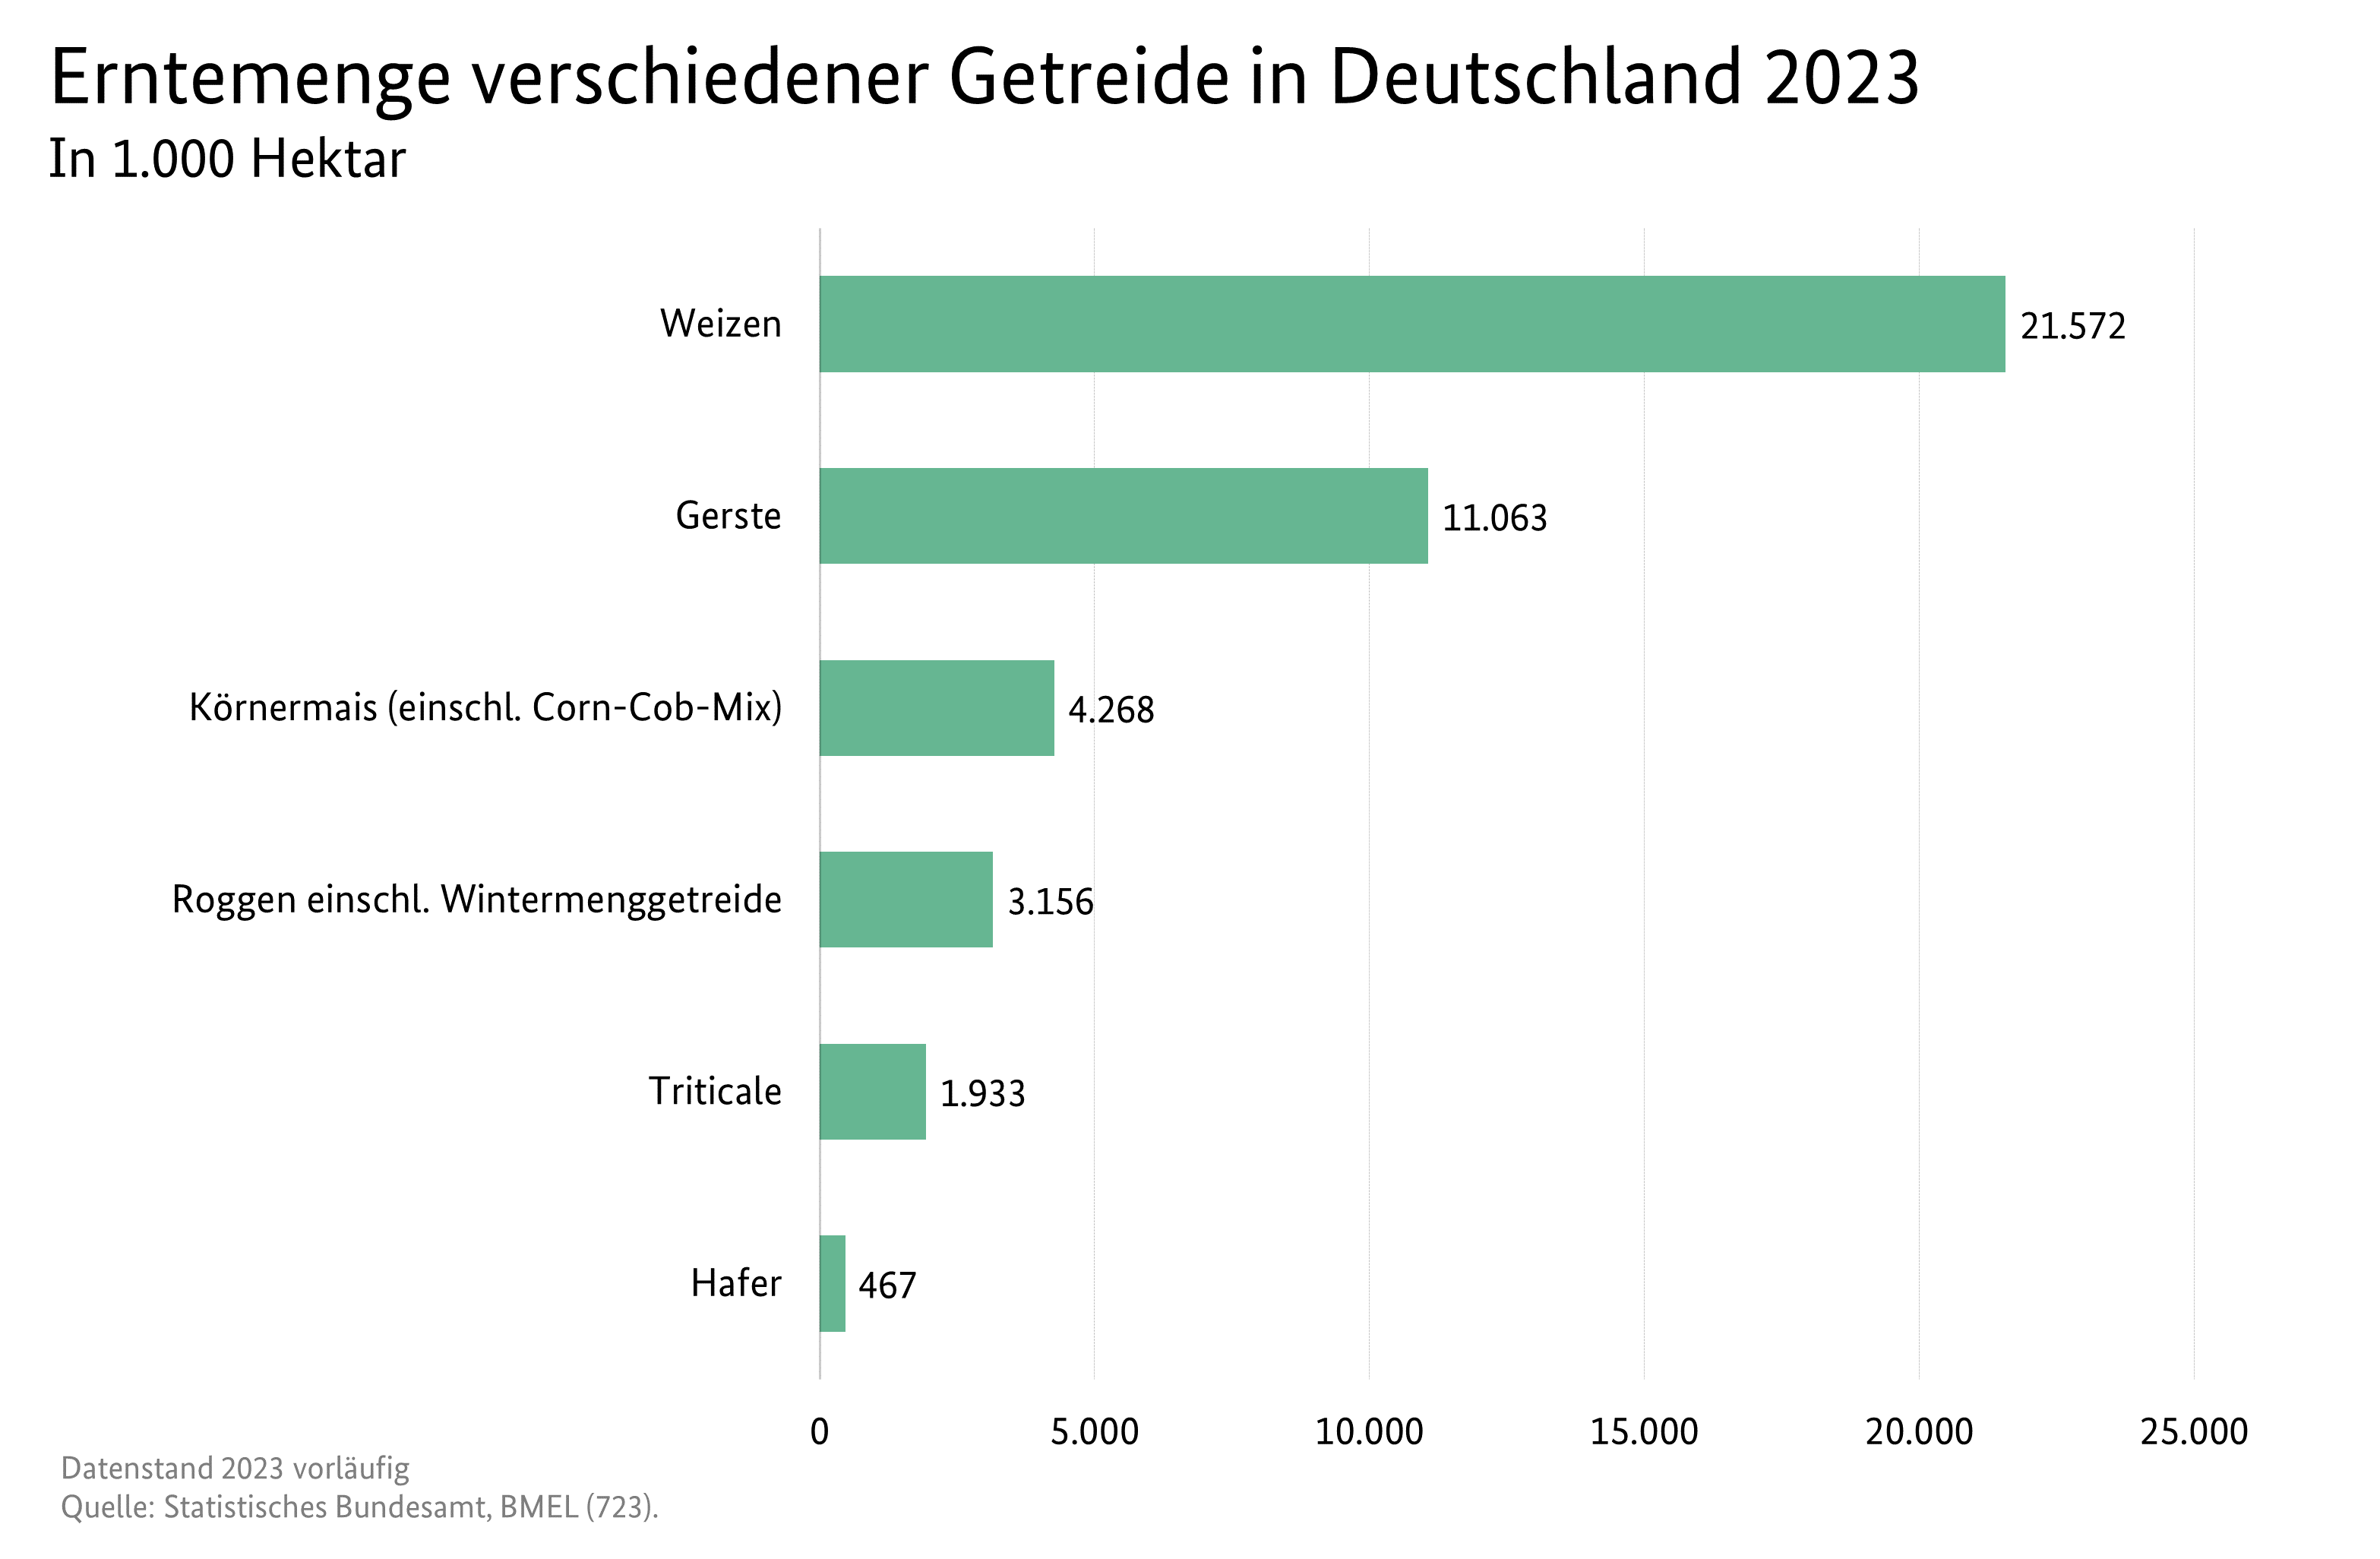 Balkendiagramm: Erntemenge verschiedener Getreide in Deutschland 2023; Datenquelle ist die Tabelle SJT-3072200